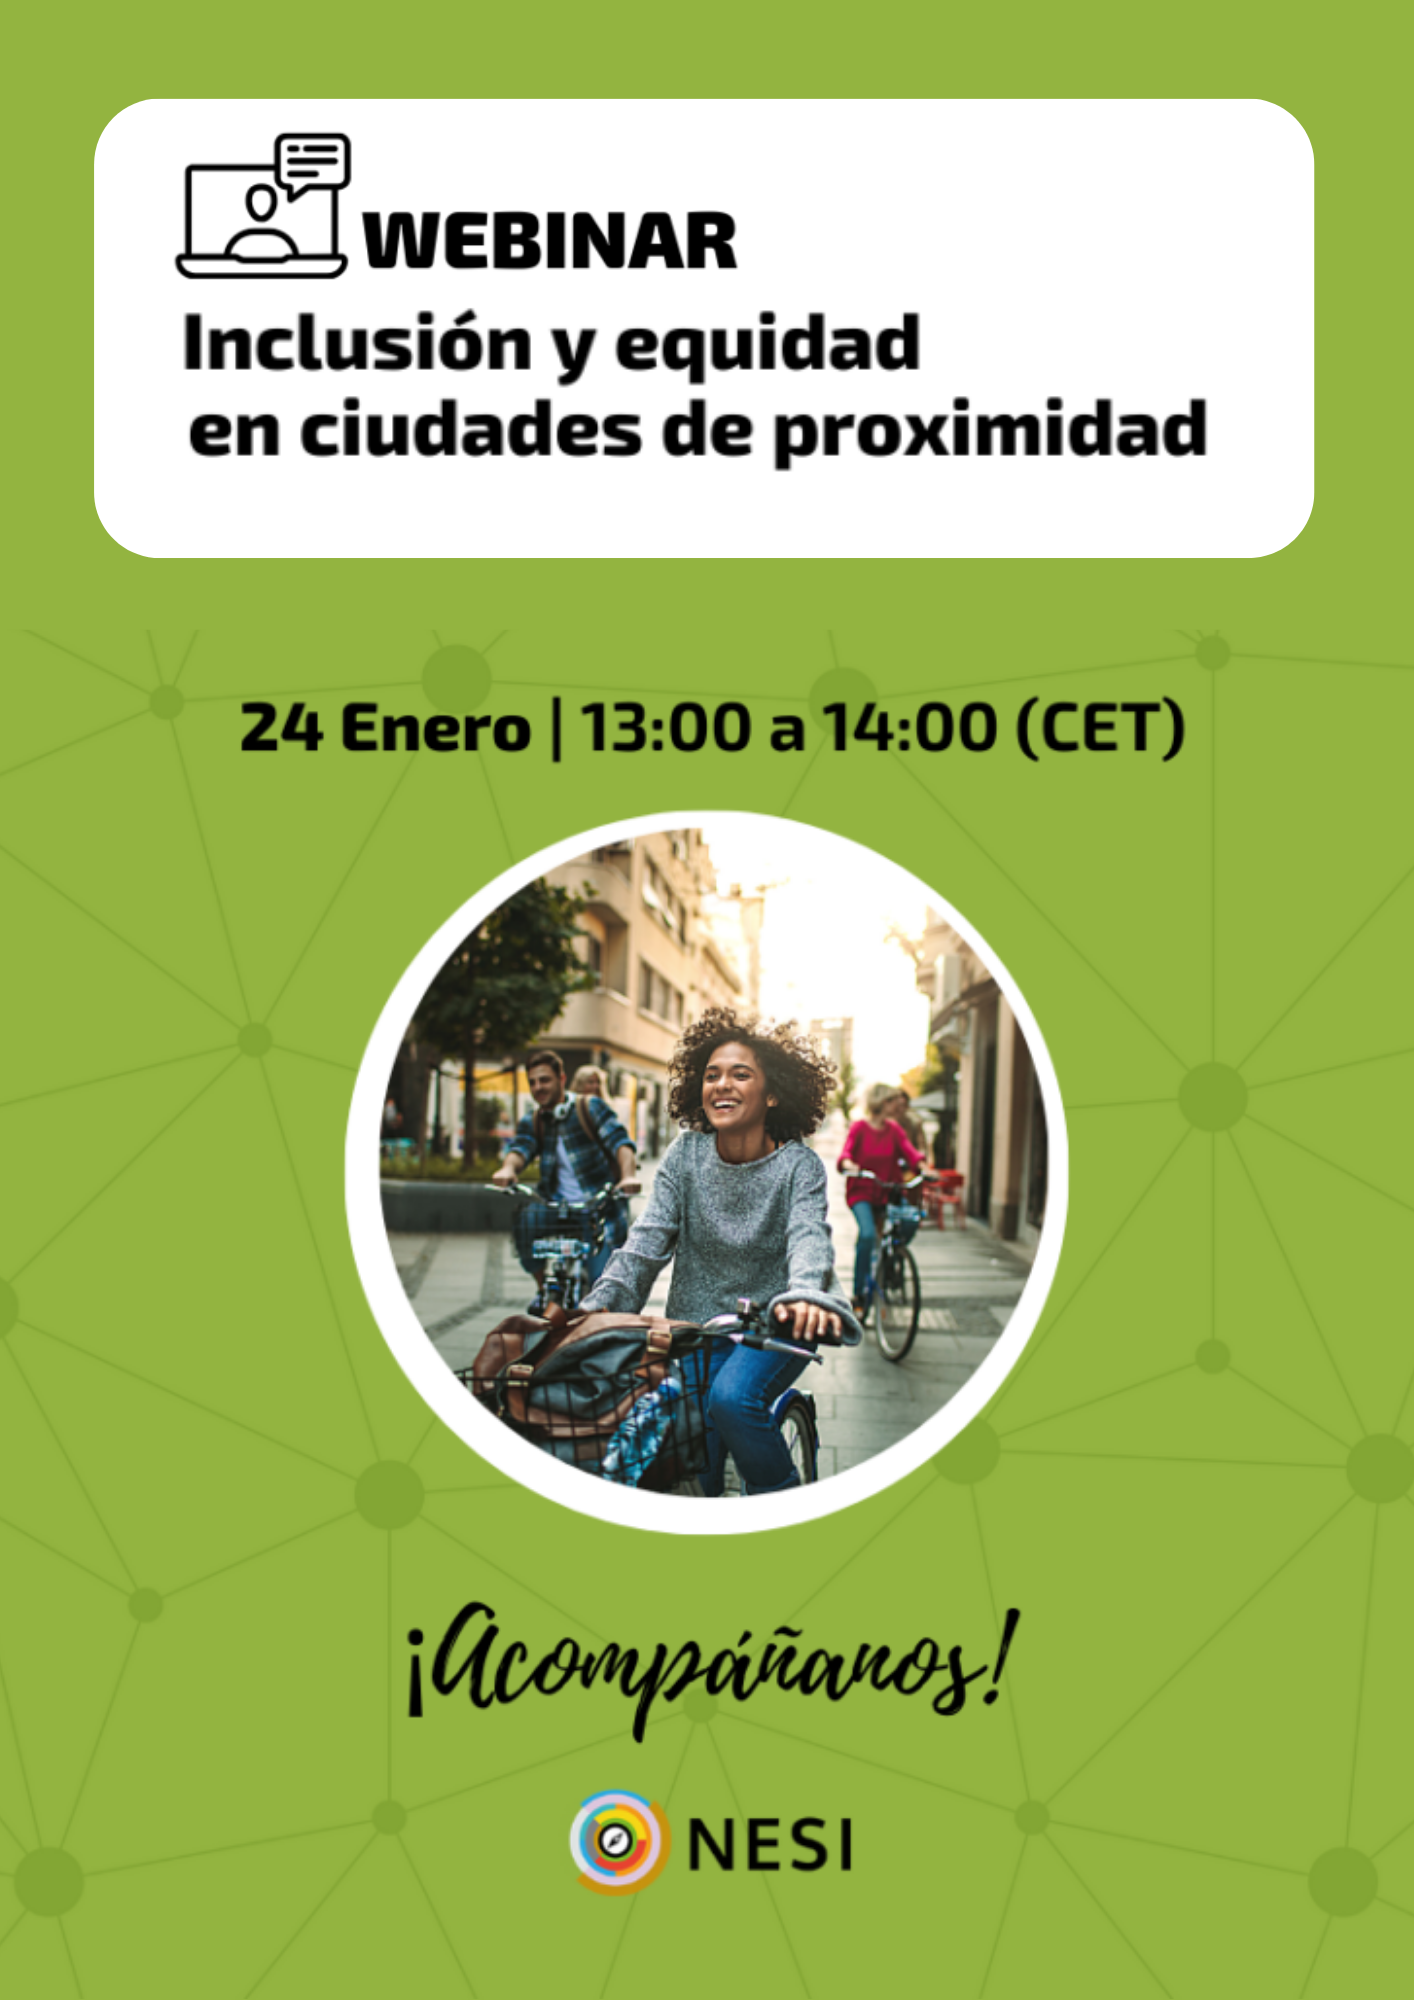 Cartel anunciador webinar "Inclusión y equidad en ciudades de proximidad"